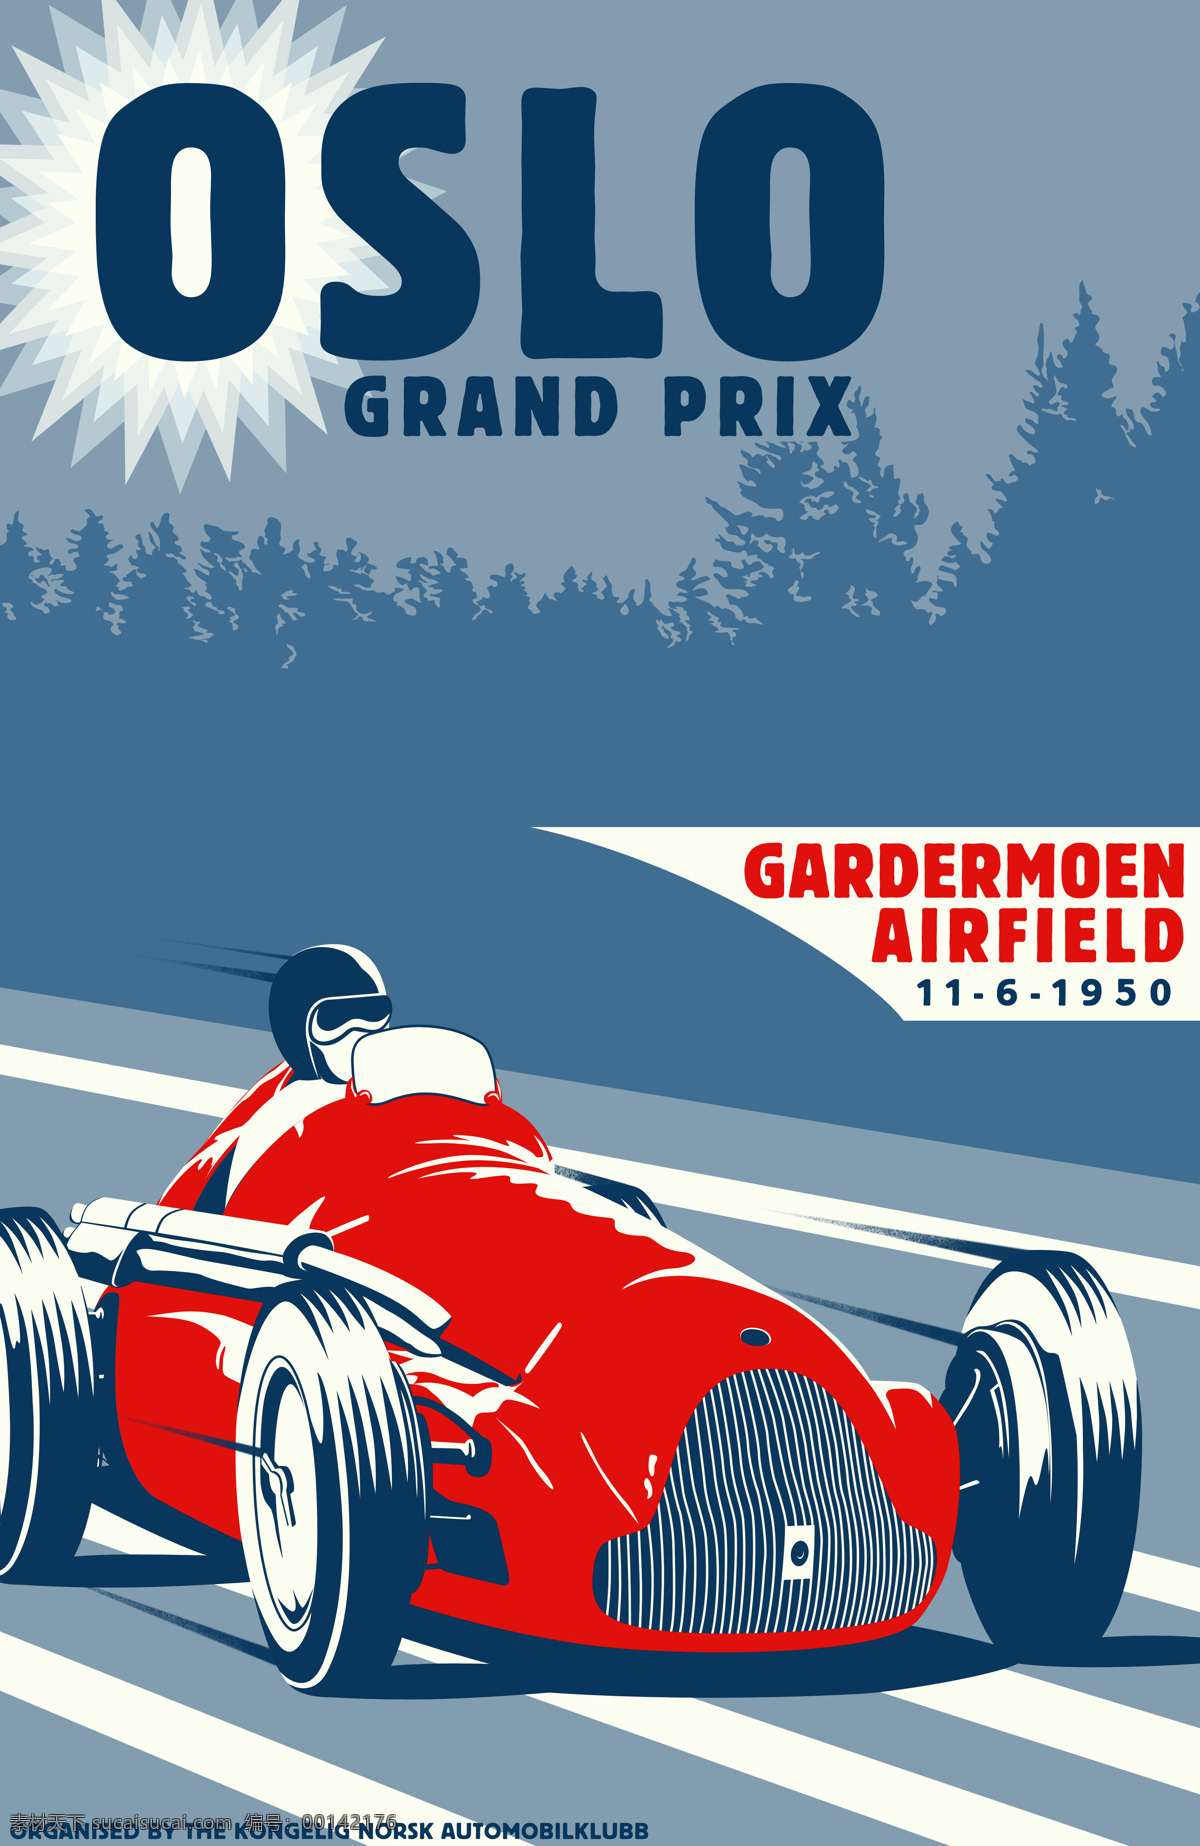 赛车 海报 f1 比赛 汽车 赛车海报 赛道 体育海报 招贴设计 老赛车 赛车手 其他海报设计